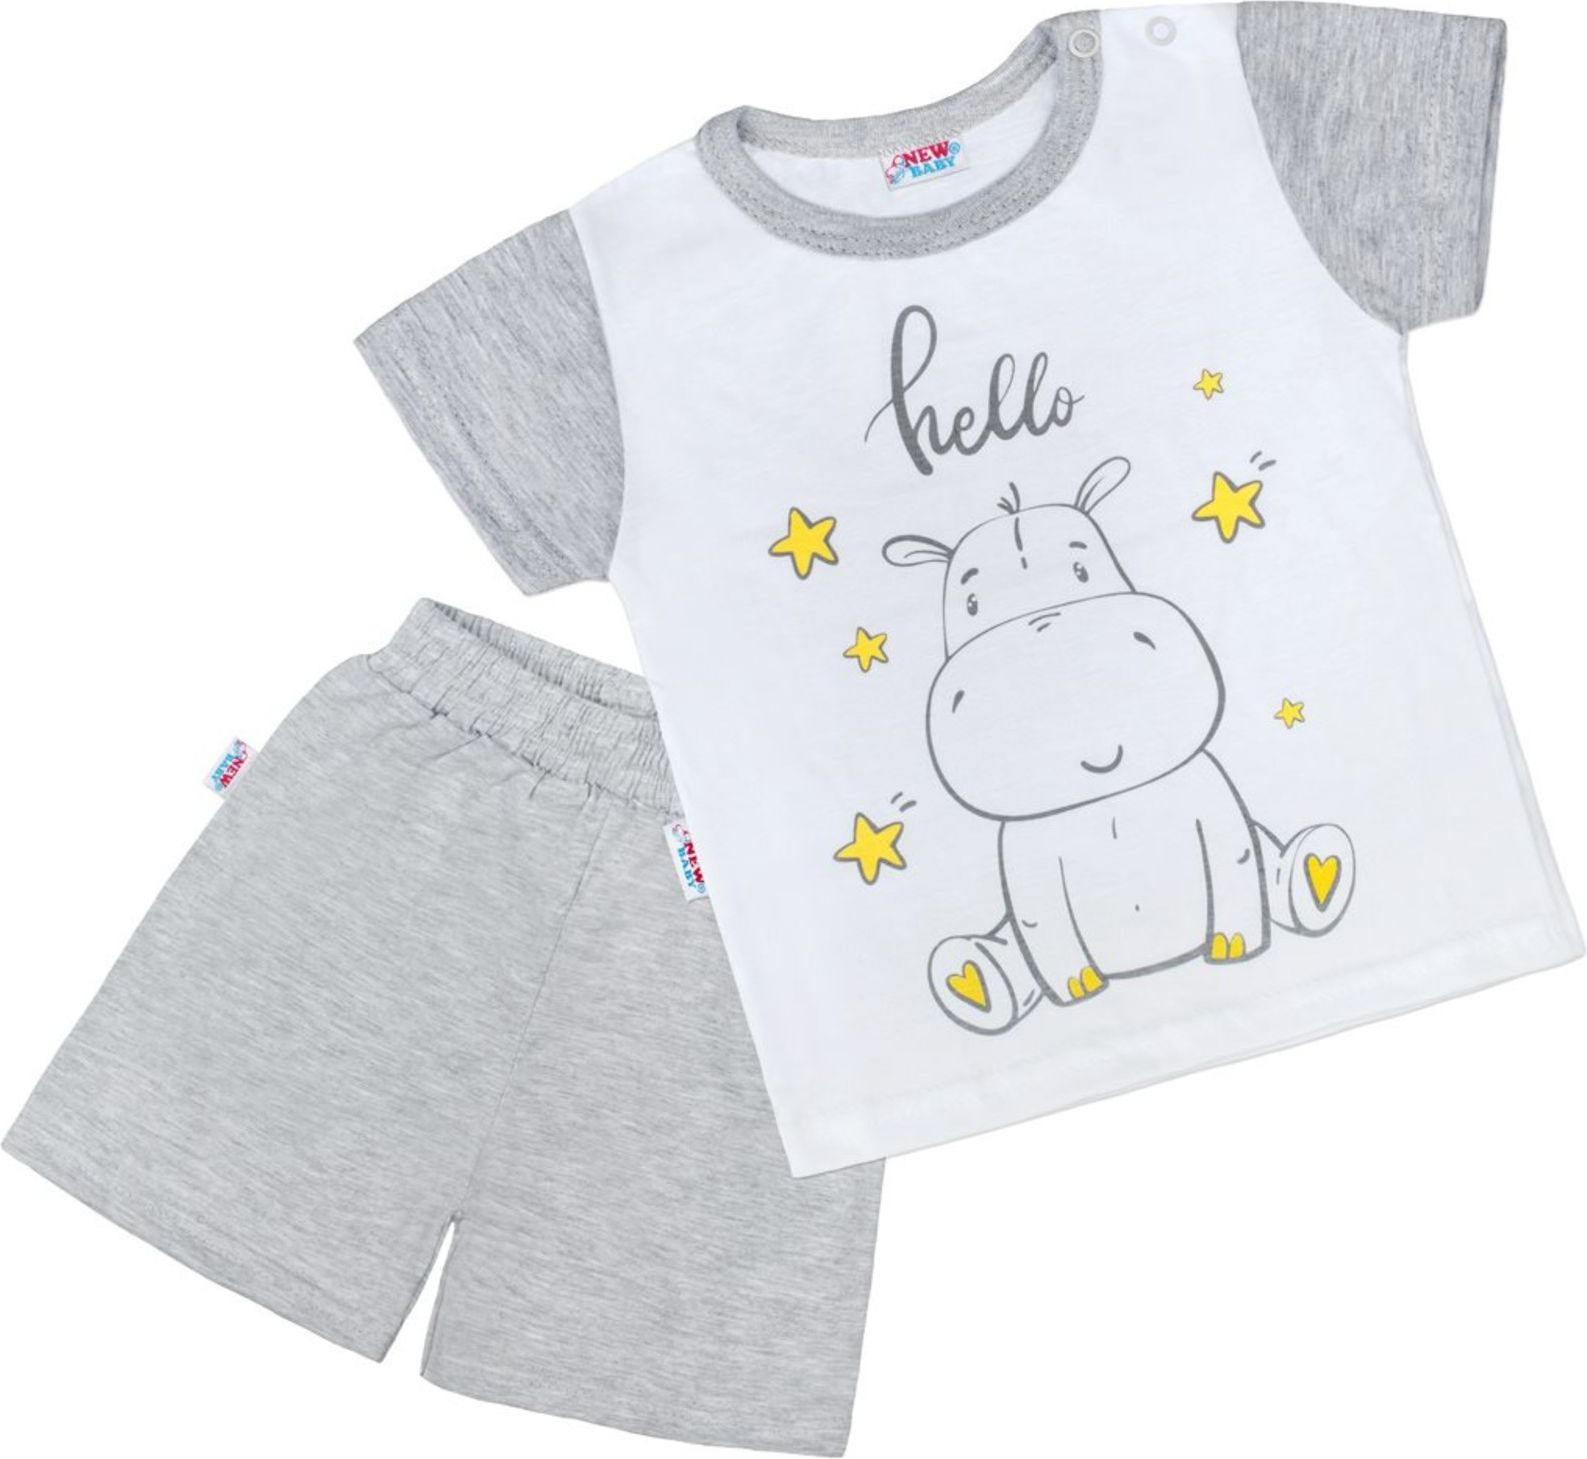 Dětské letní pyžamko New Baby Hello s hrošíkem bílo-šedé - Dětské letní pyžamko New Baby Hello s hrošíkem bílo-šedé - obrázek 1